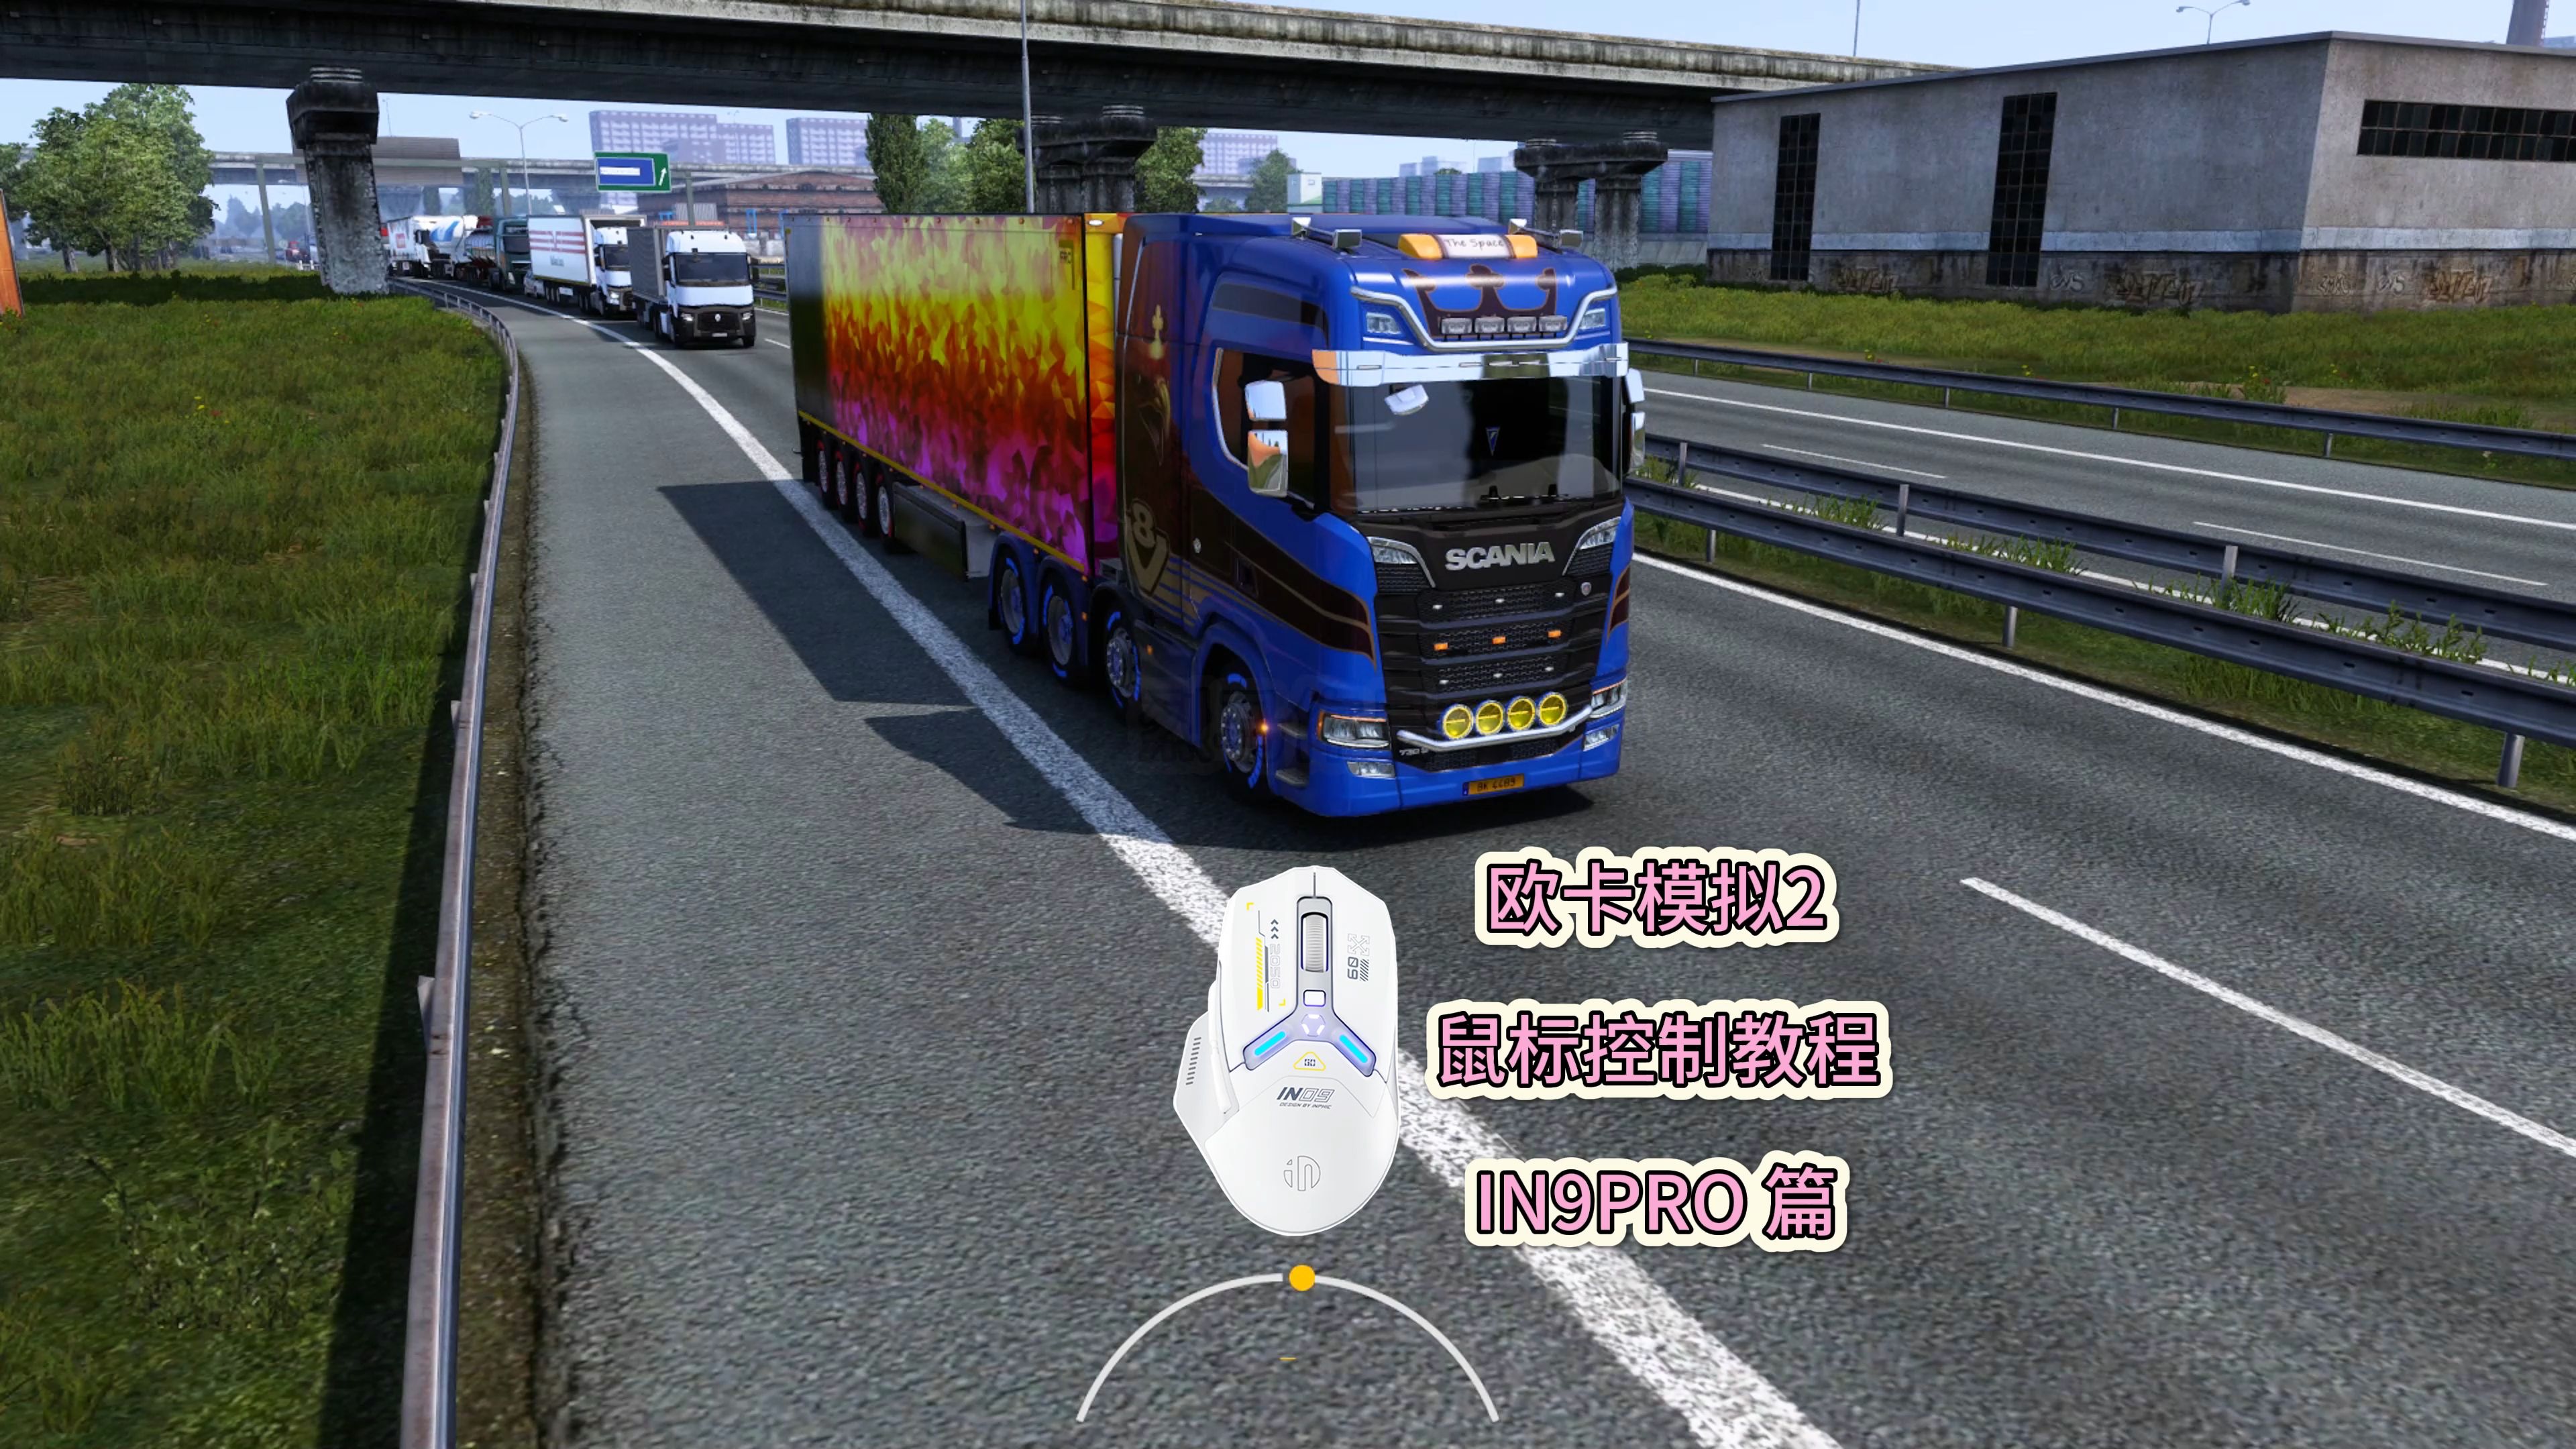 欧洲卡车模拟2 欧卡2 英菲克鼠标控制设置教程in9pro篇